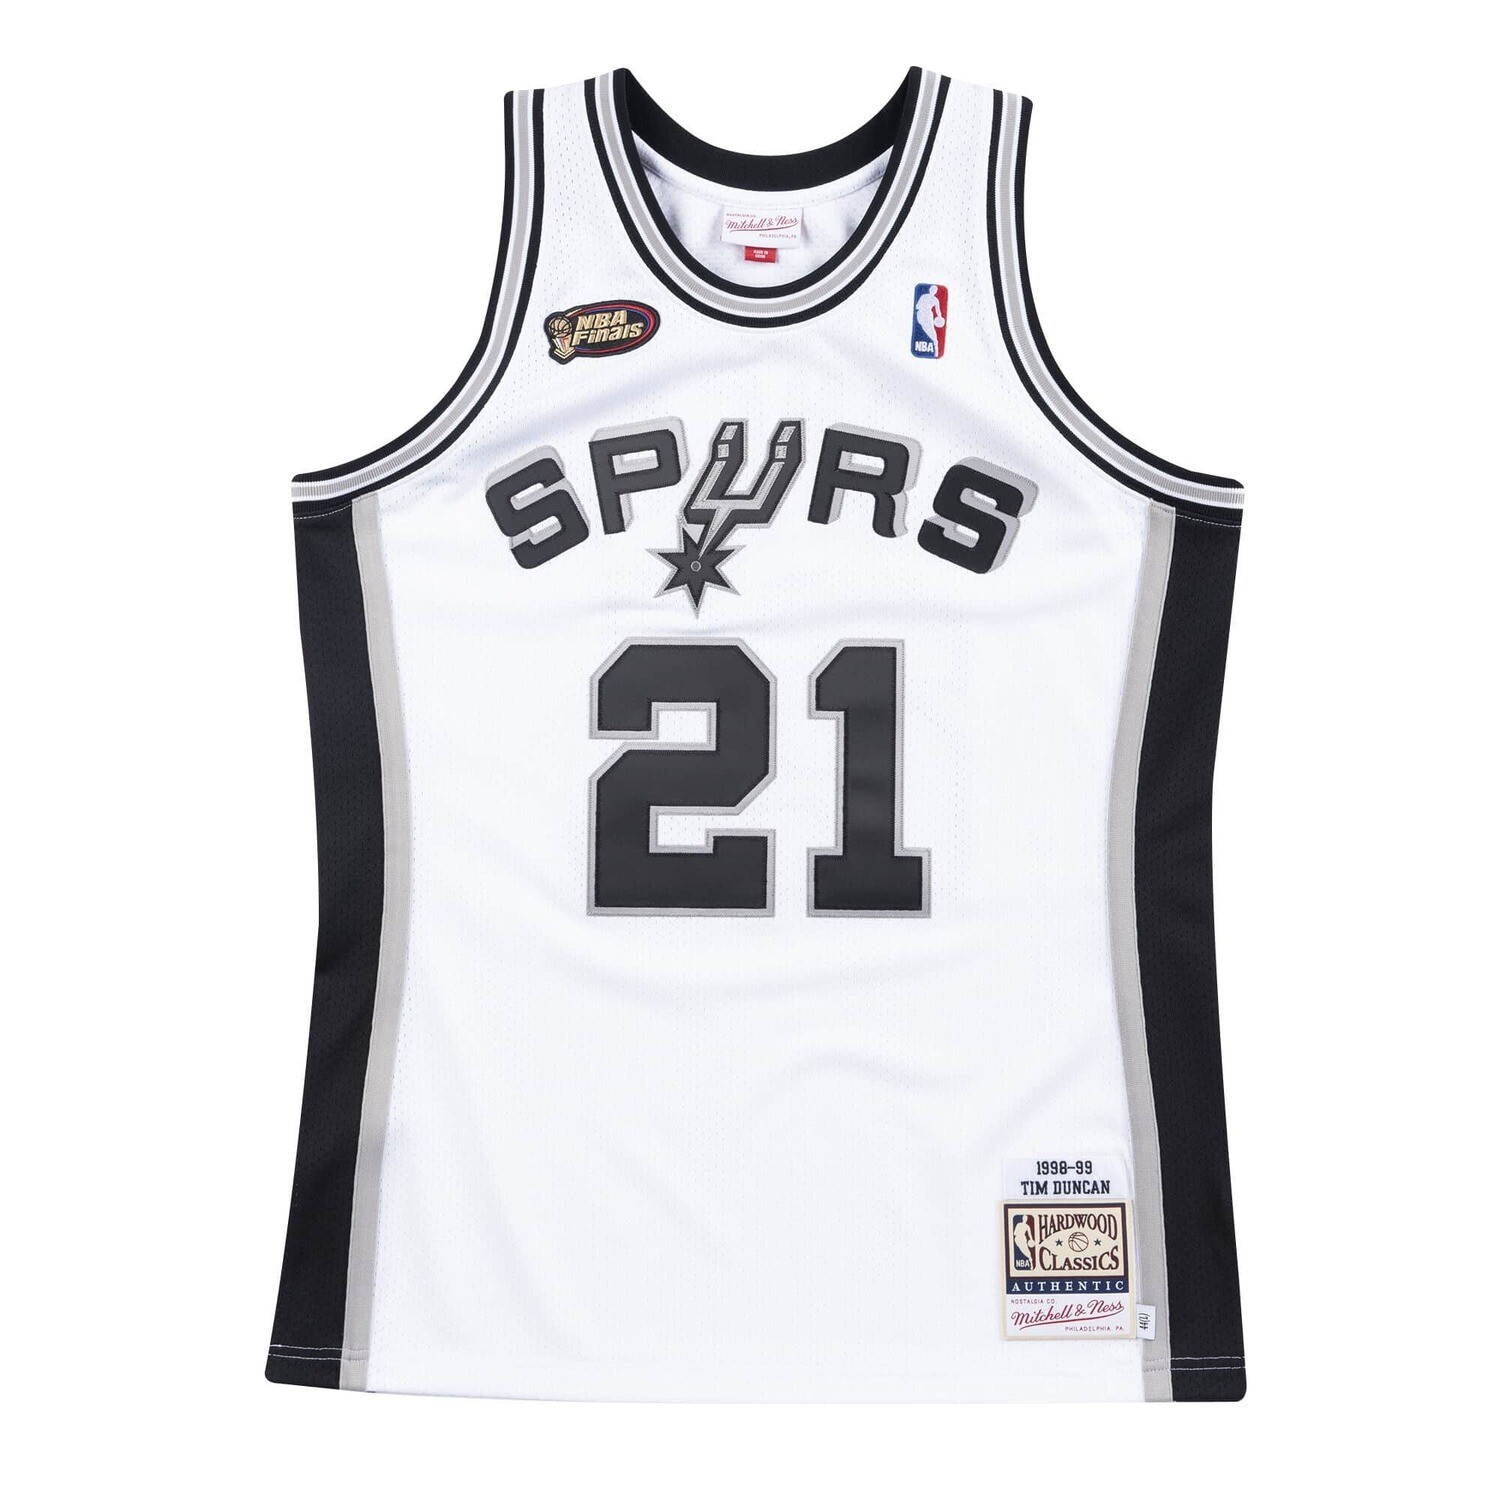 Authentic San Antonio Spurs Home Finals 1998-99 Tim Duncan Jersey